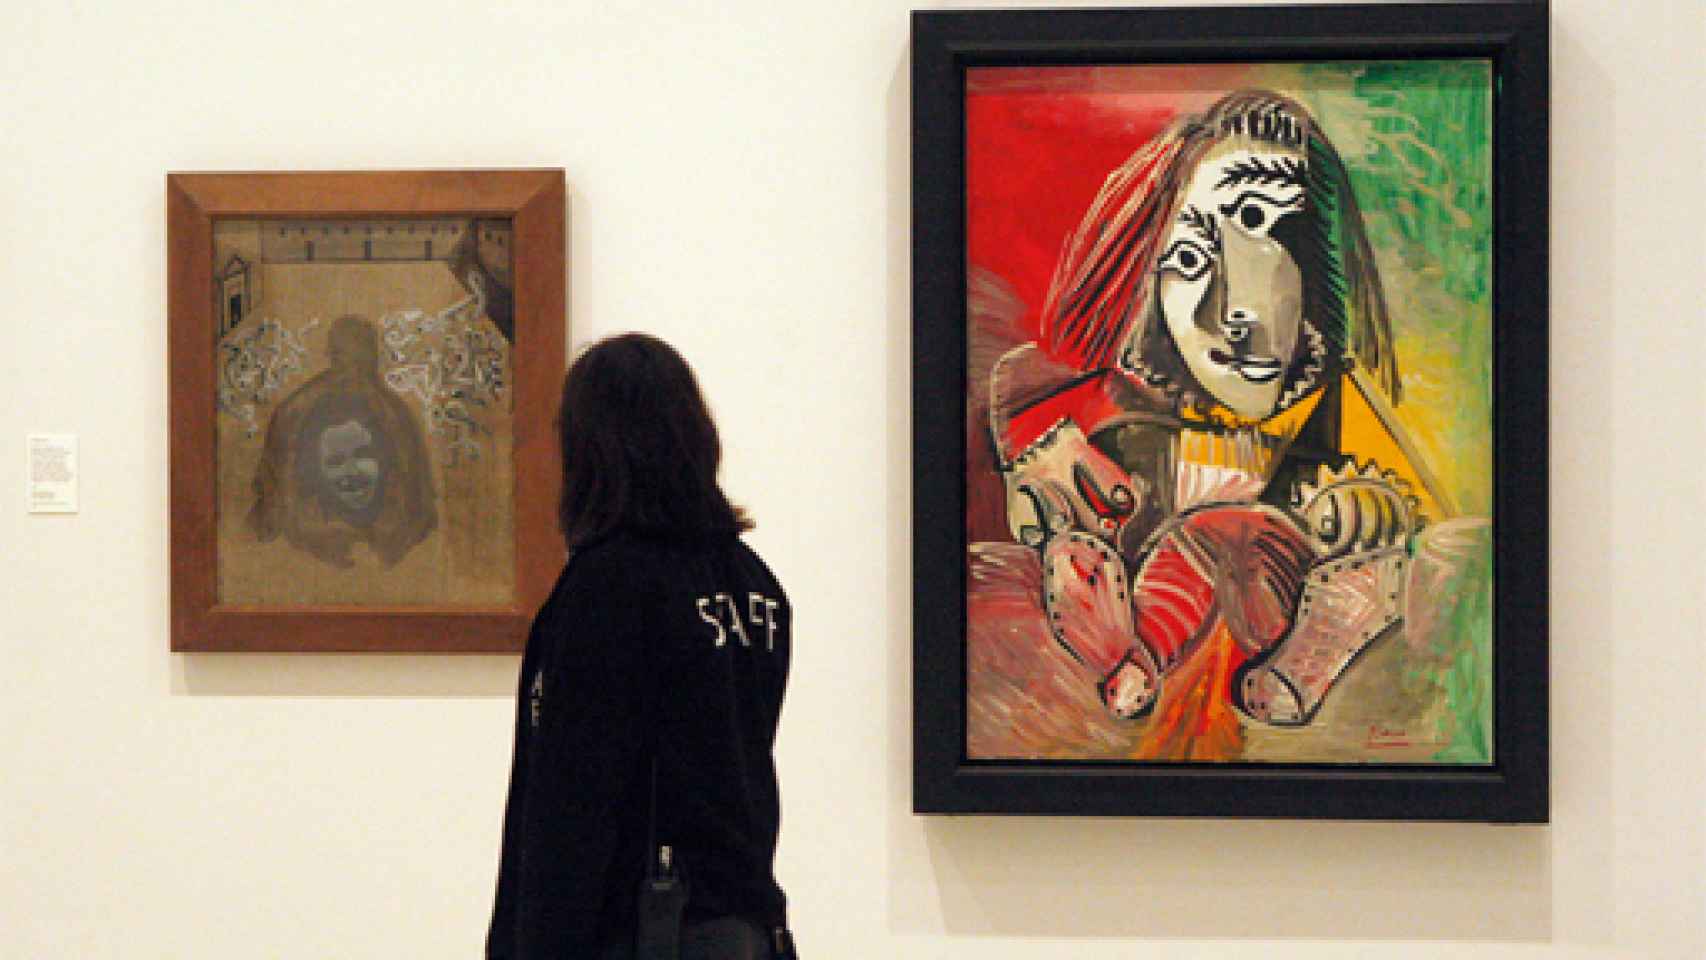 Image: Picasso y Dalí, genial cara a cara